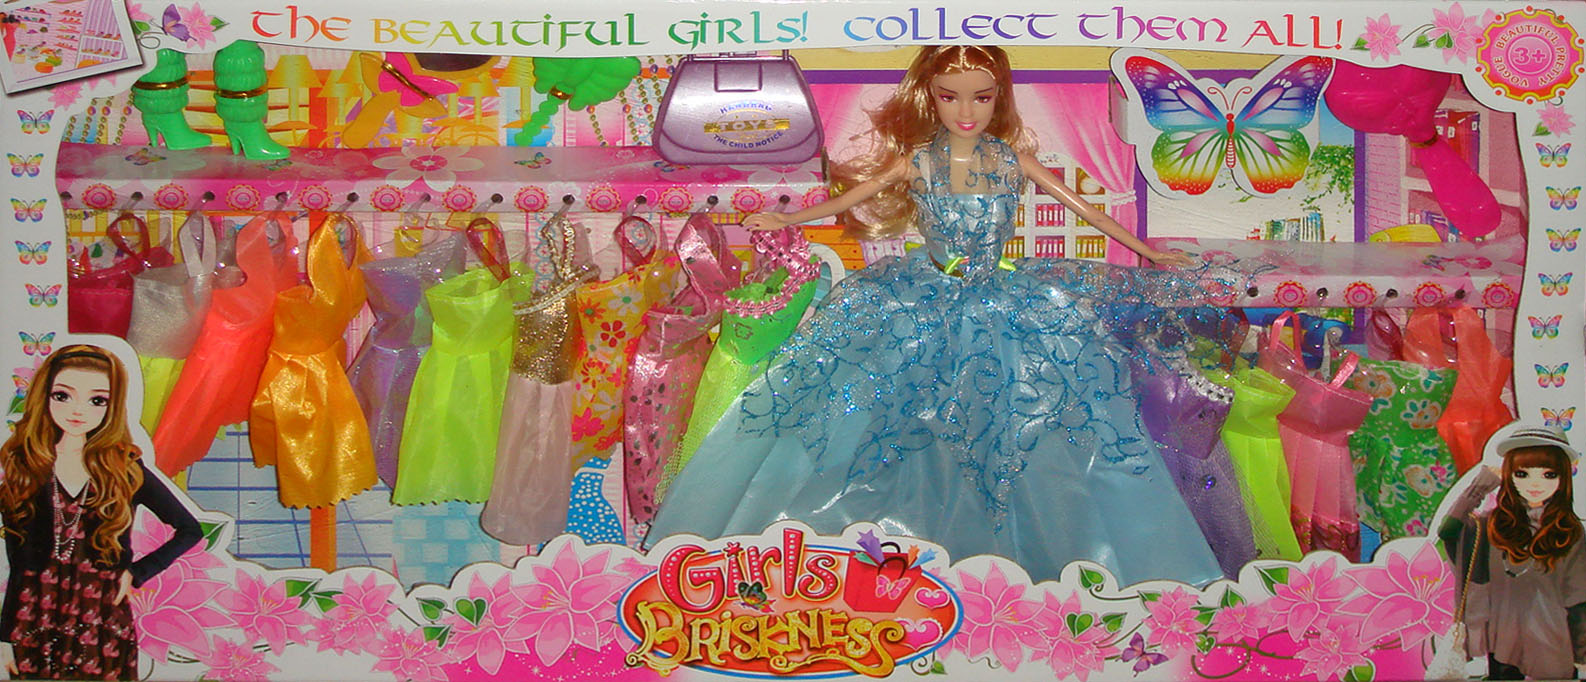 芭芘娃娃,16套衣服换装娃娃,生日礼物,女孩子玩具